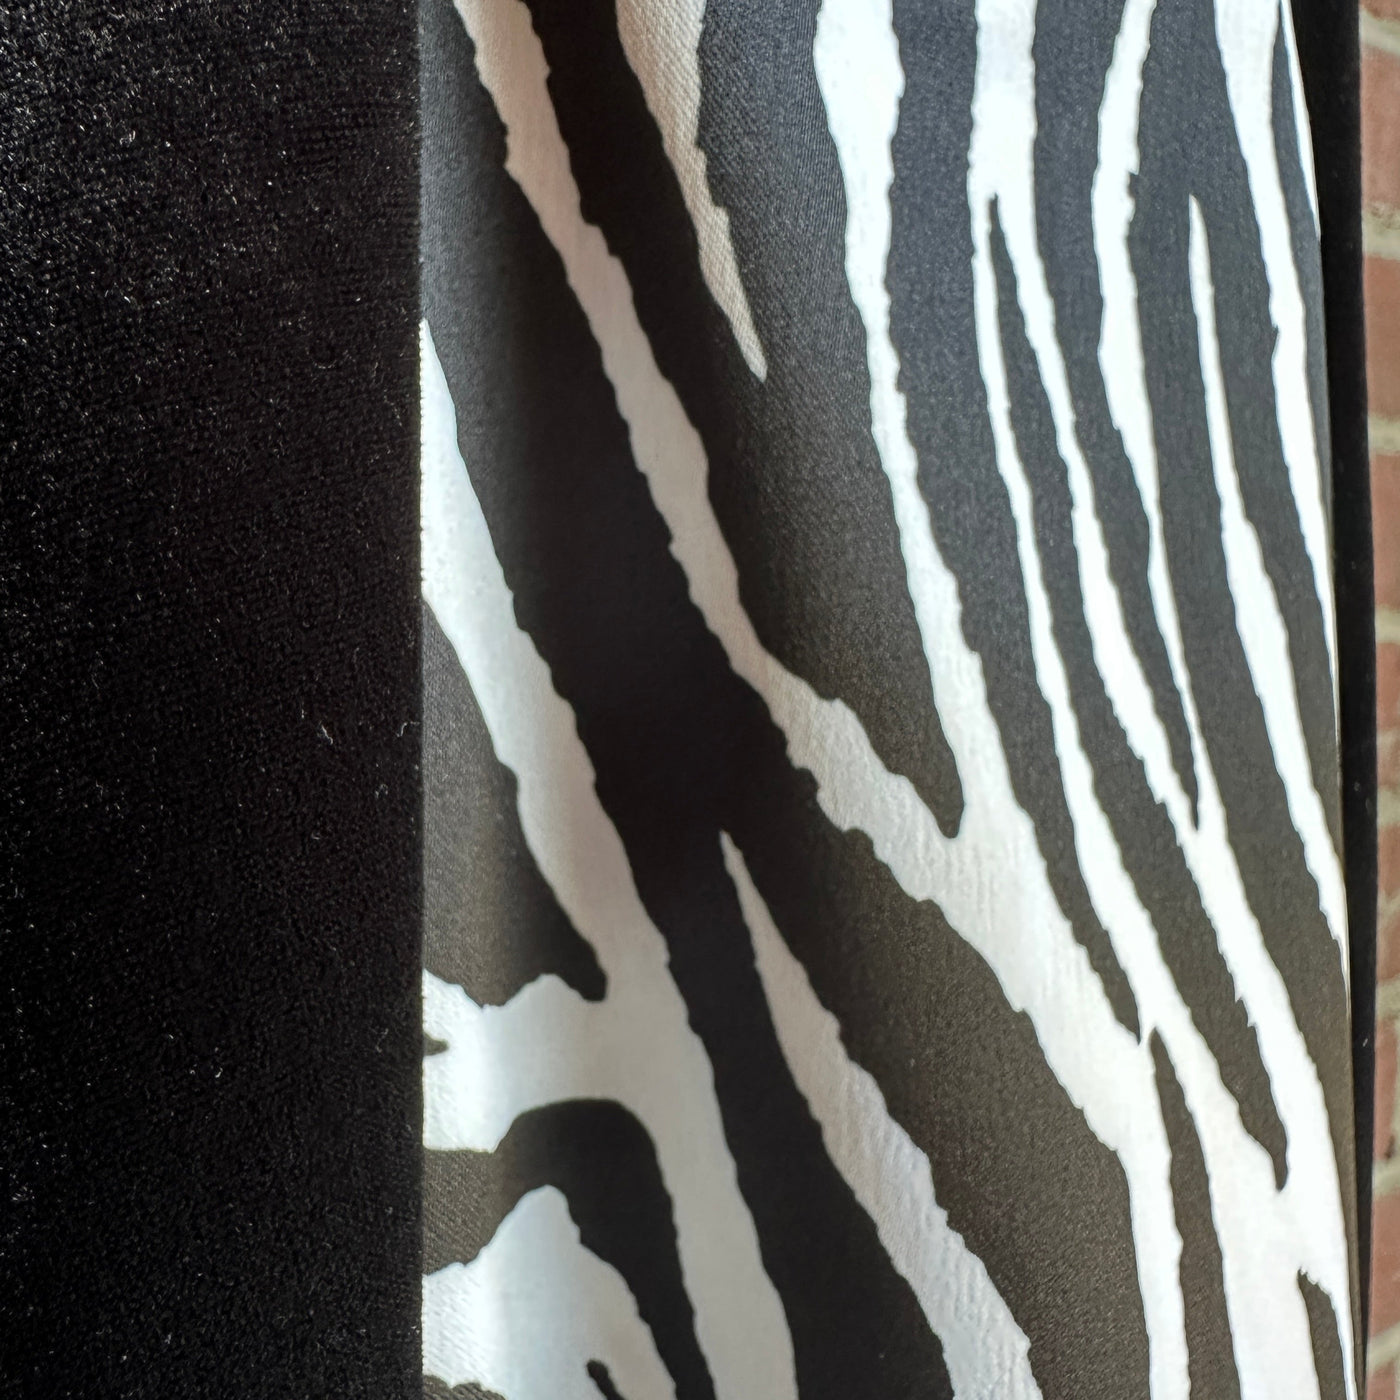 90s/2000s Black/Zebra Print Velvet “Jessica McClintock for Gunne Sax” Column Dress